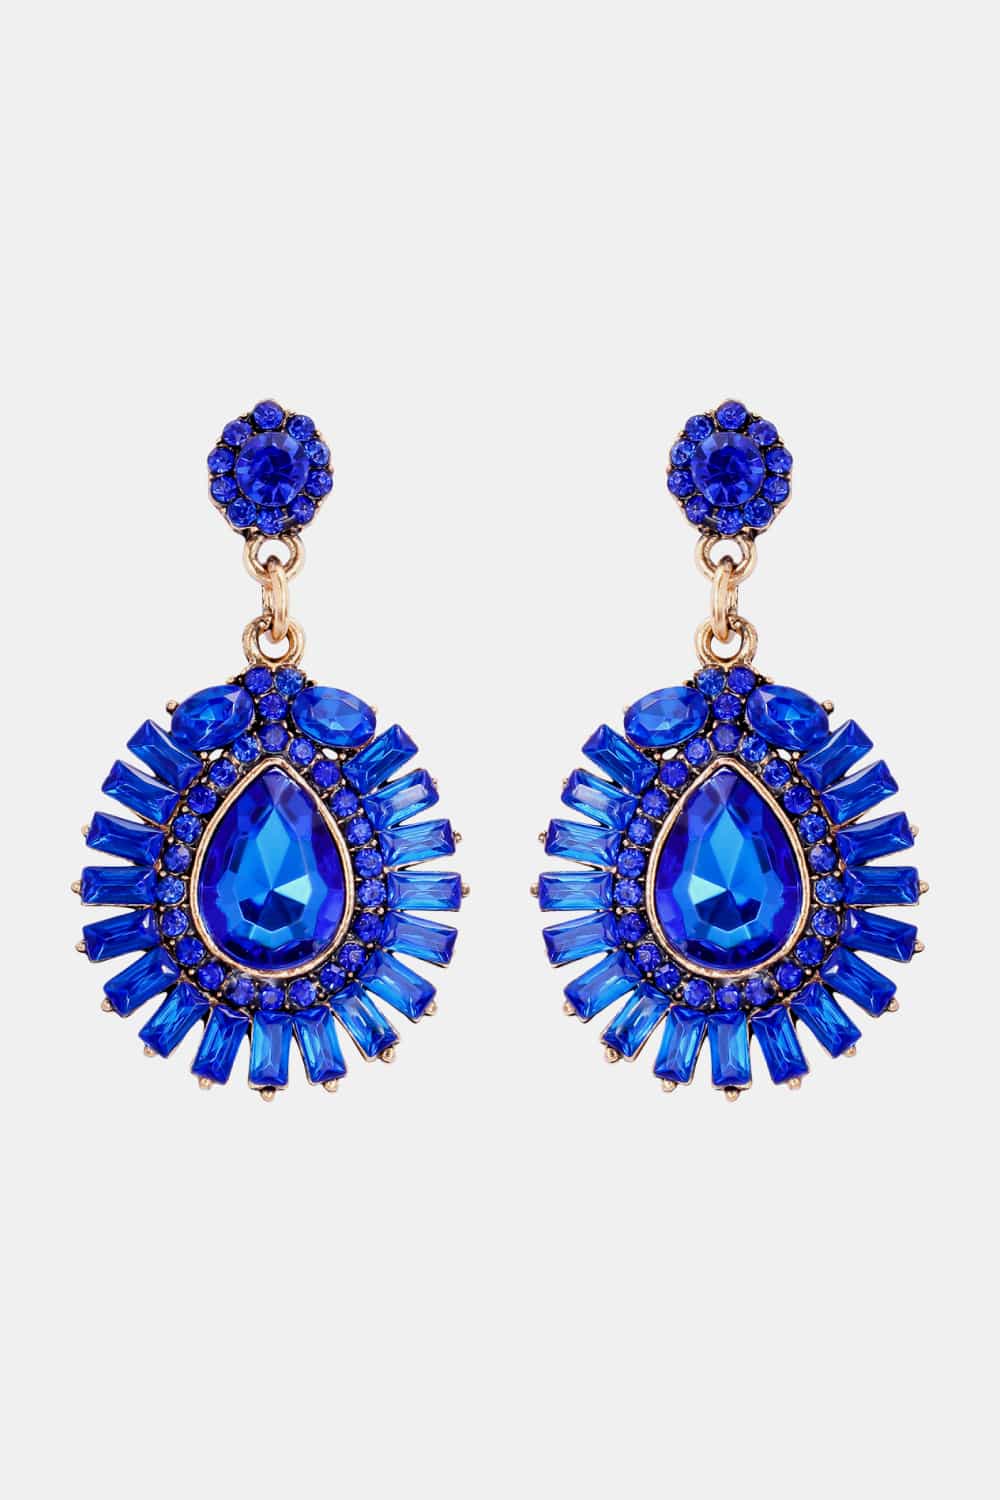 Teardrop Shape Glass Stone Dangle Earrings BLUE ZONE PLANET